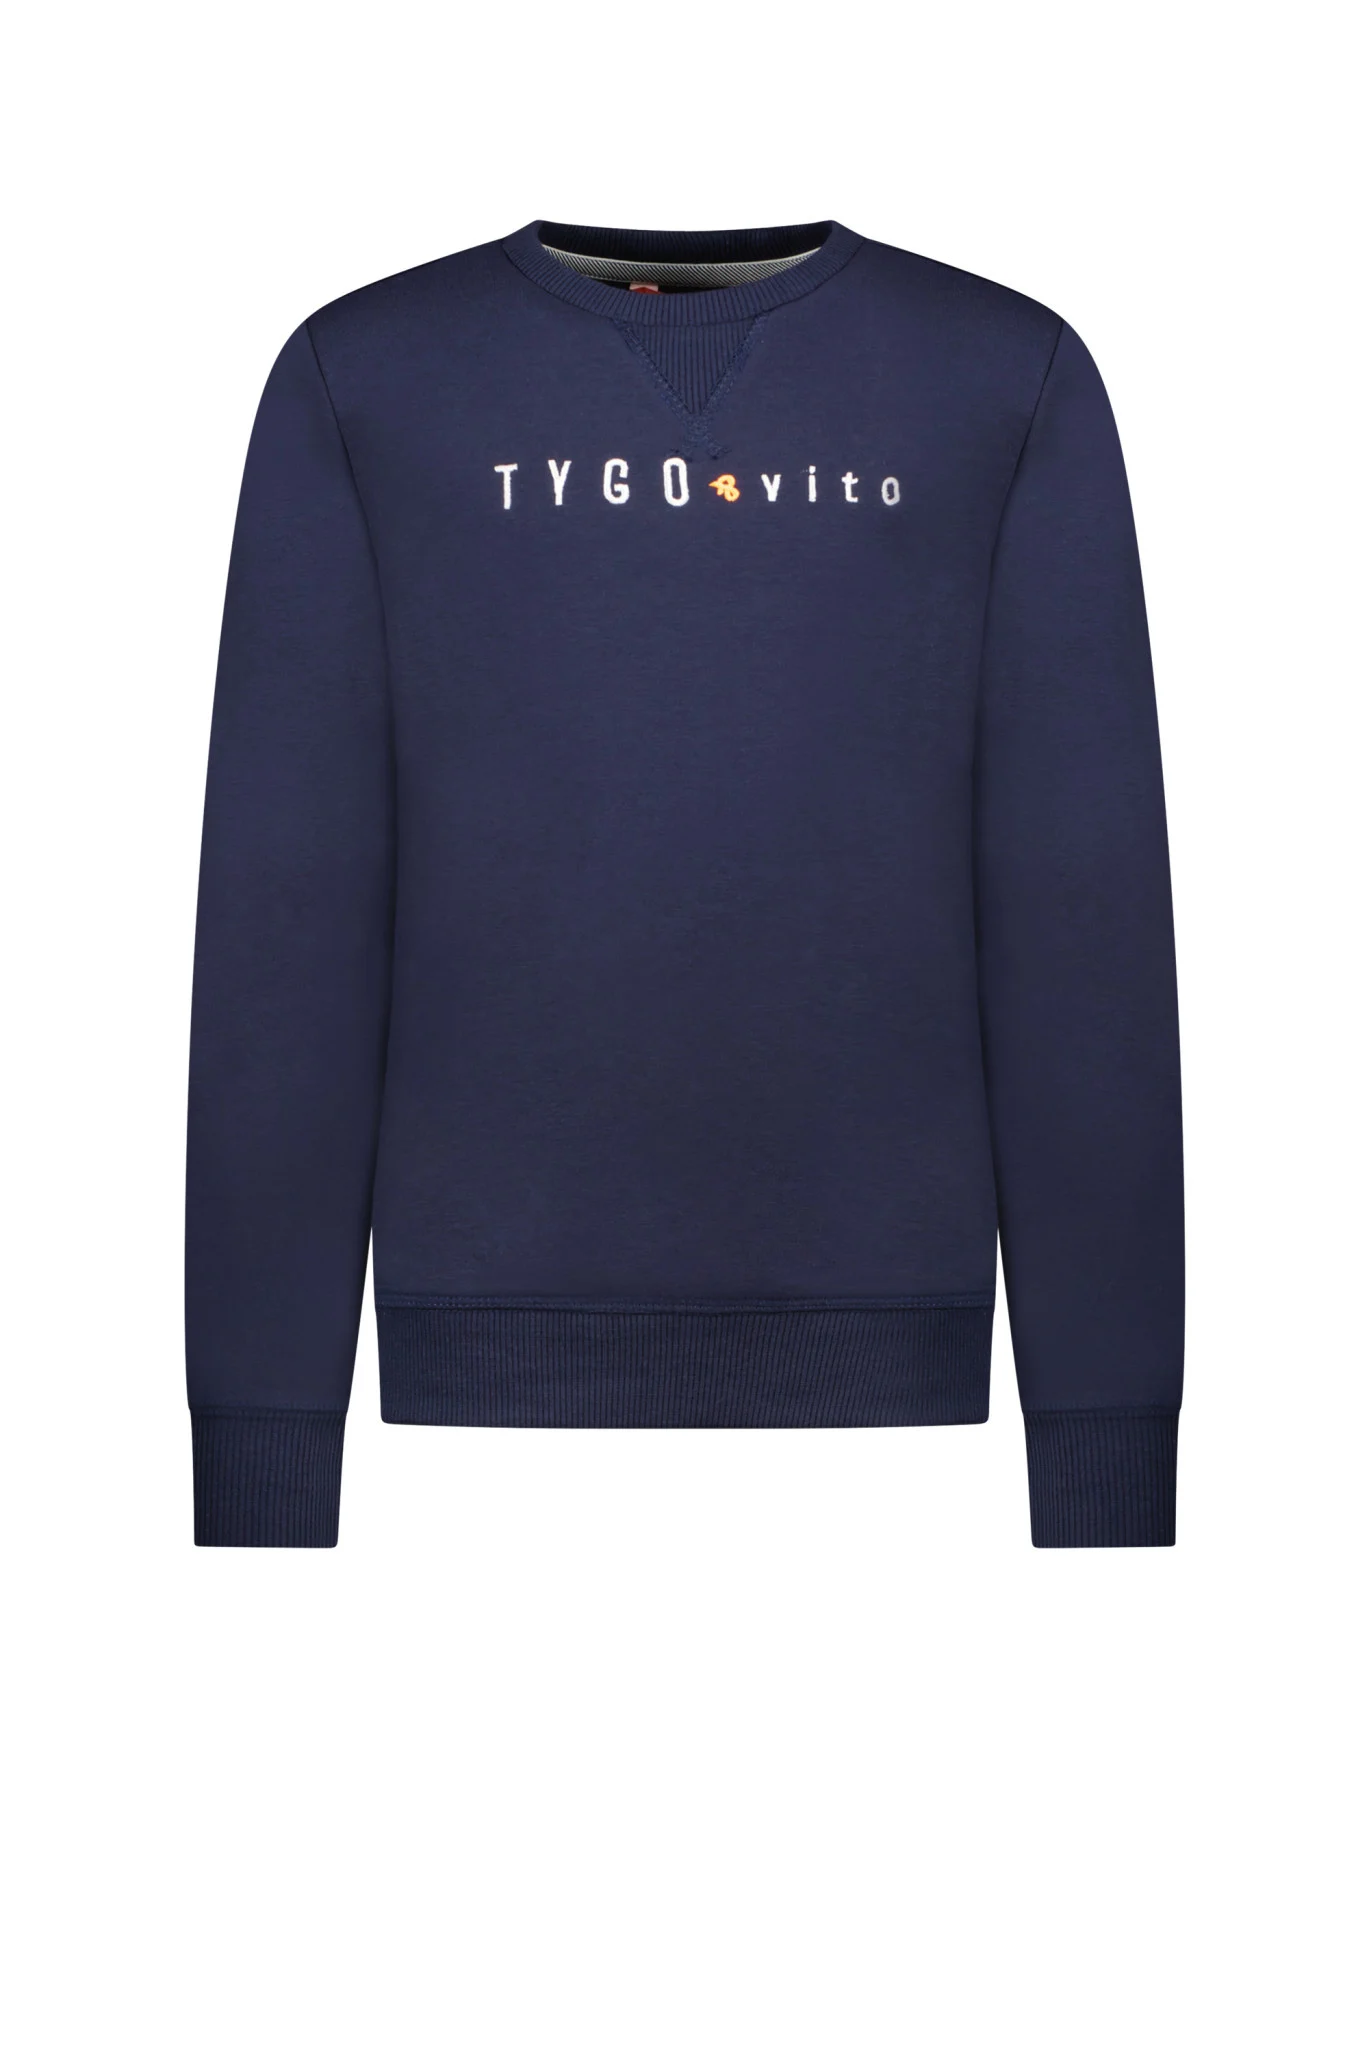 Afbeelding van Tygo & Vito Jongens sweater met geborduurd logo noos